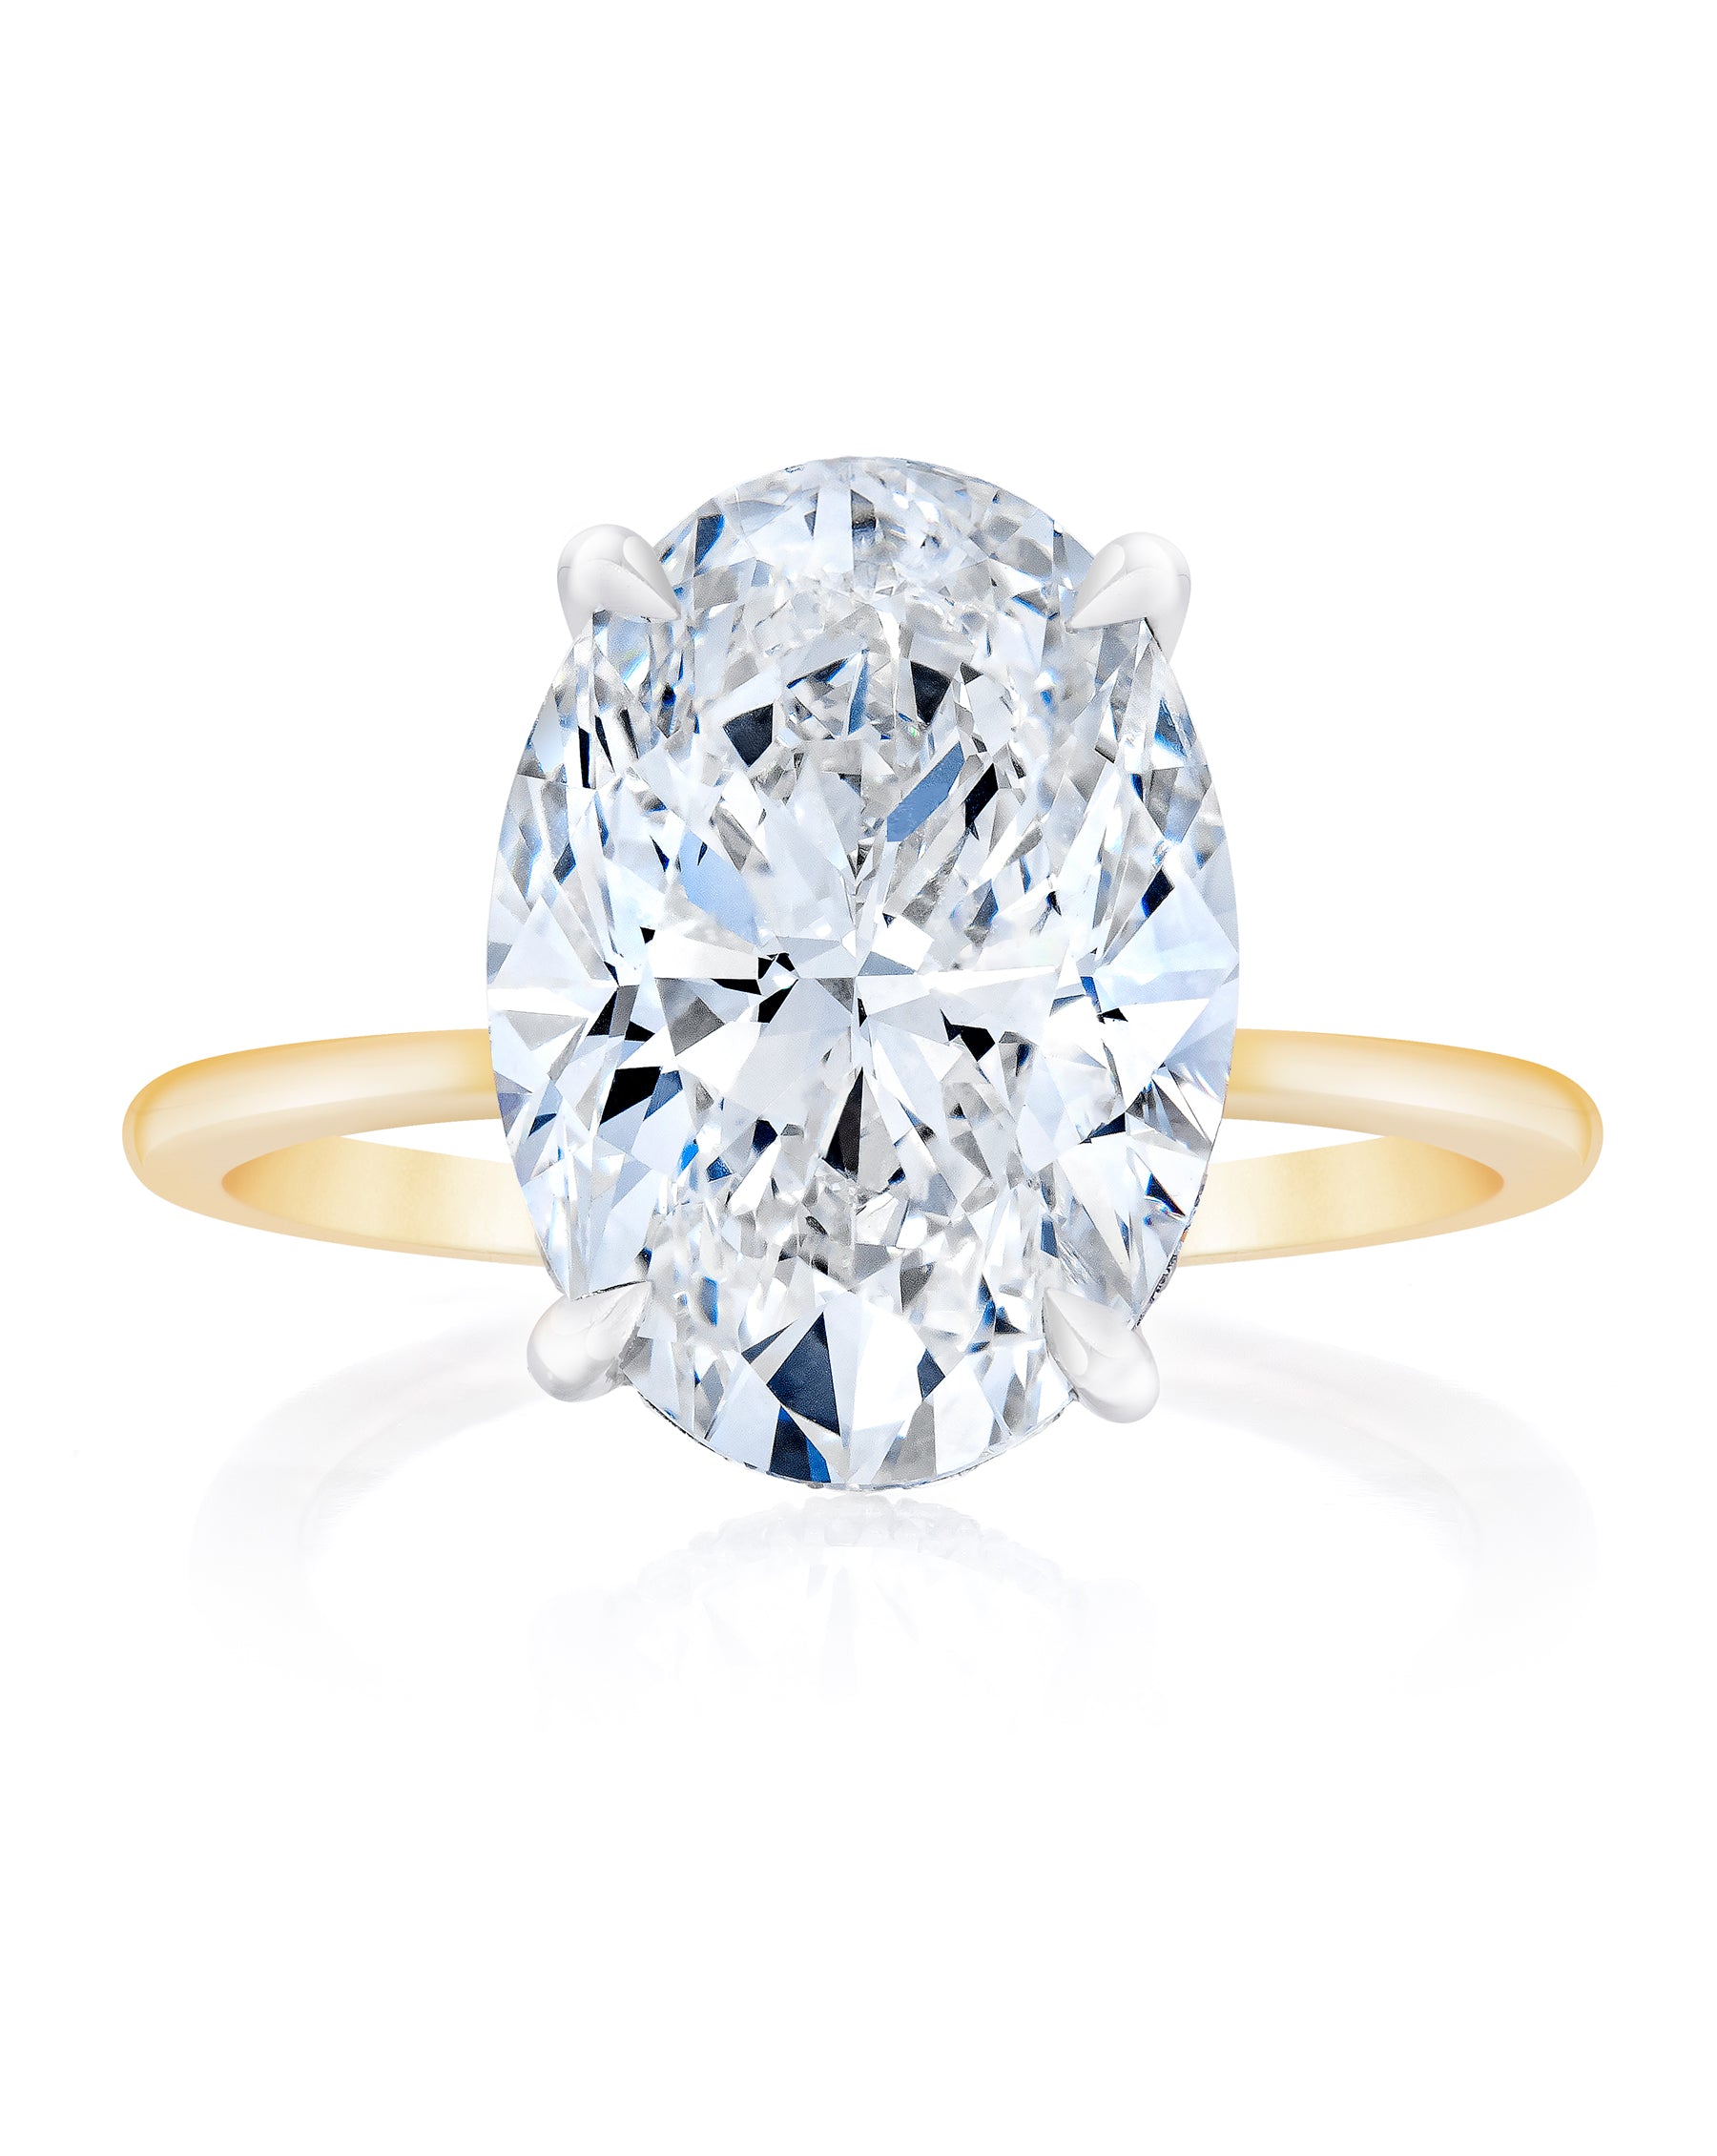 Diamond White Gold Ring, Big Alloro